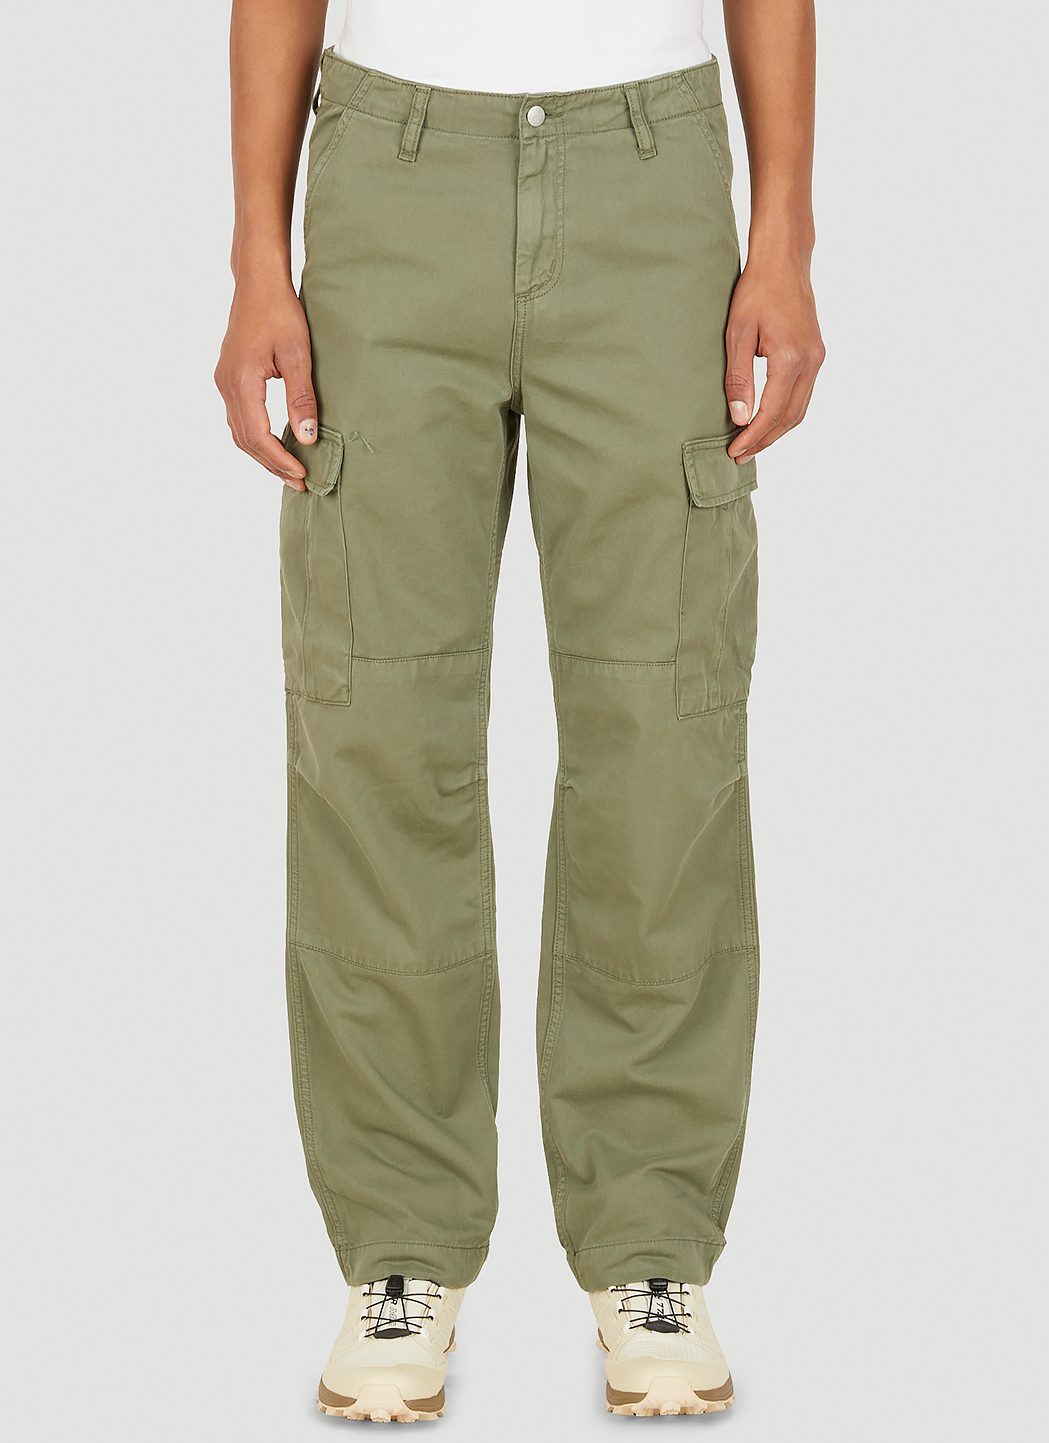 Carhartt WIP REGULAR PANT - Cargo trousers - khaki 